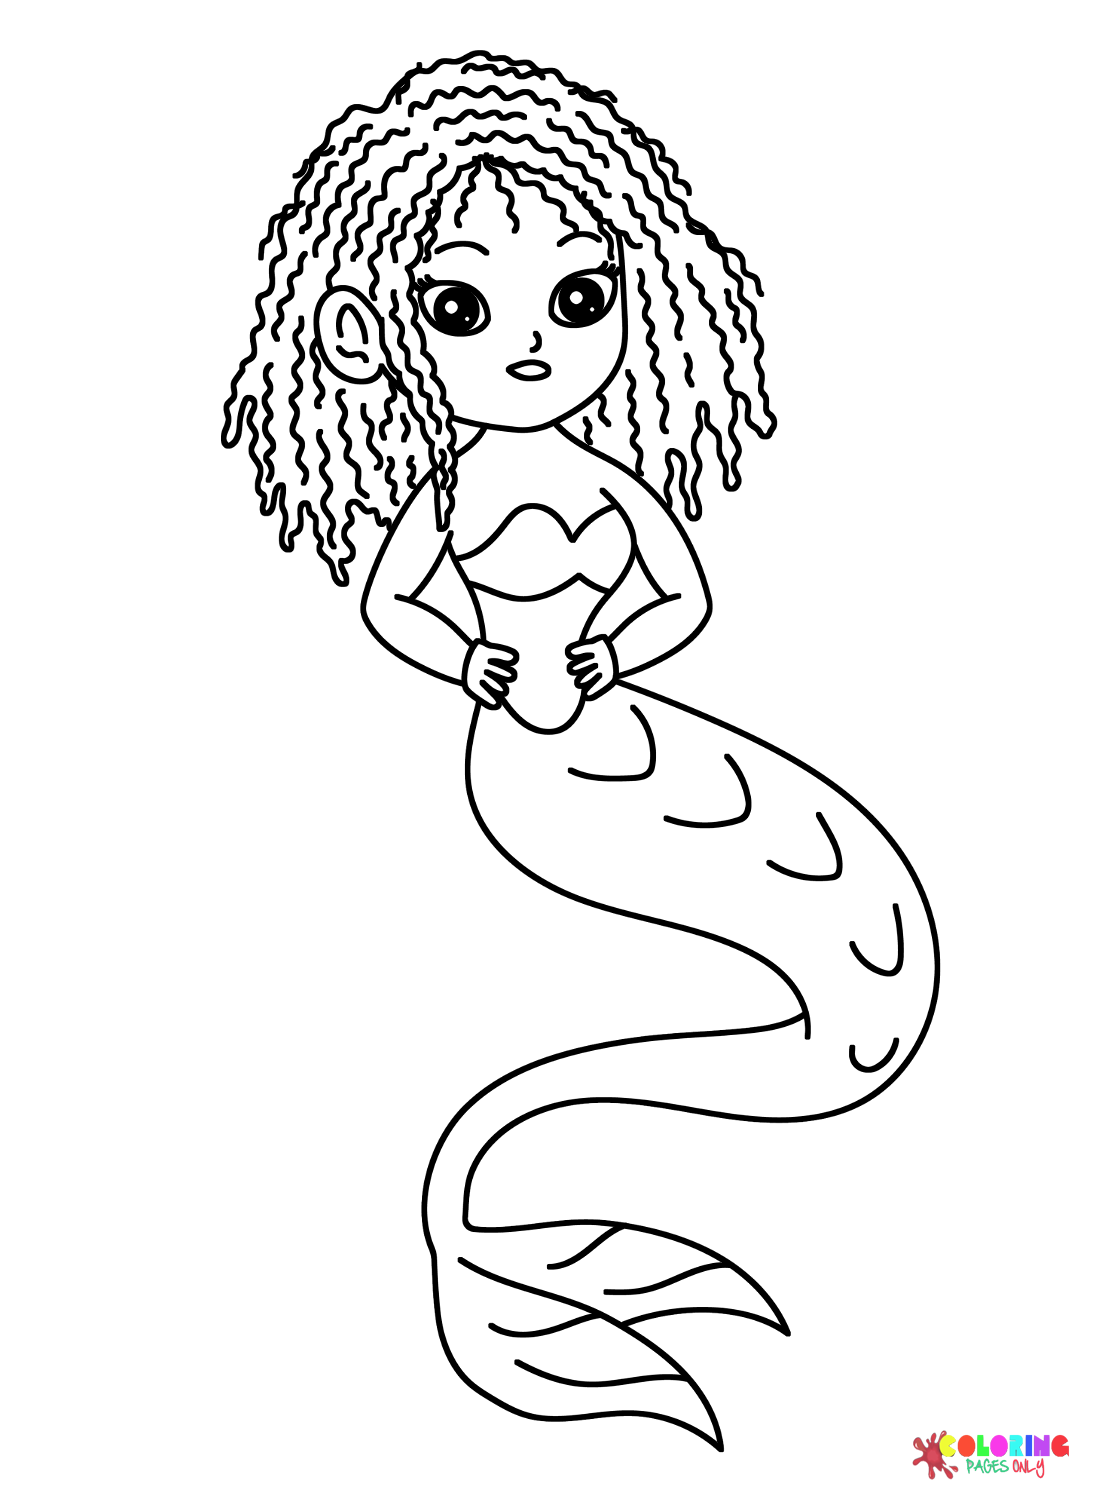 Süße Meerjungfrau mit Dreadlocks-Haaren von Dreadlocks